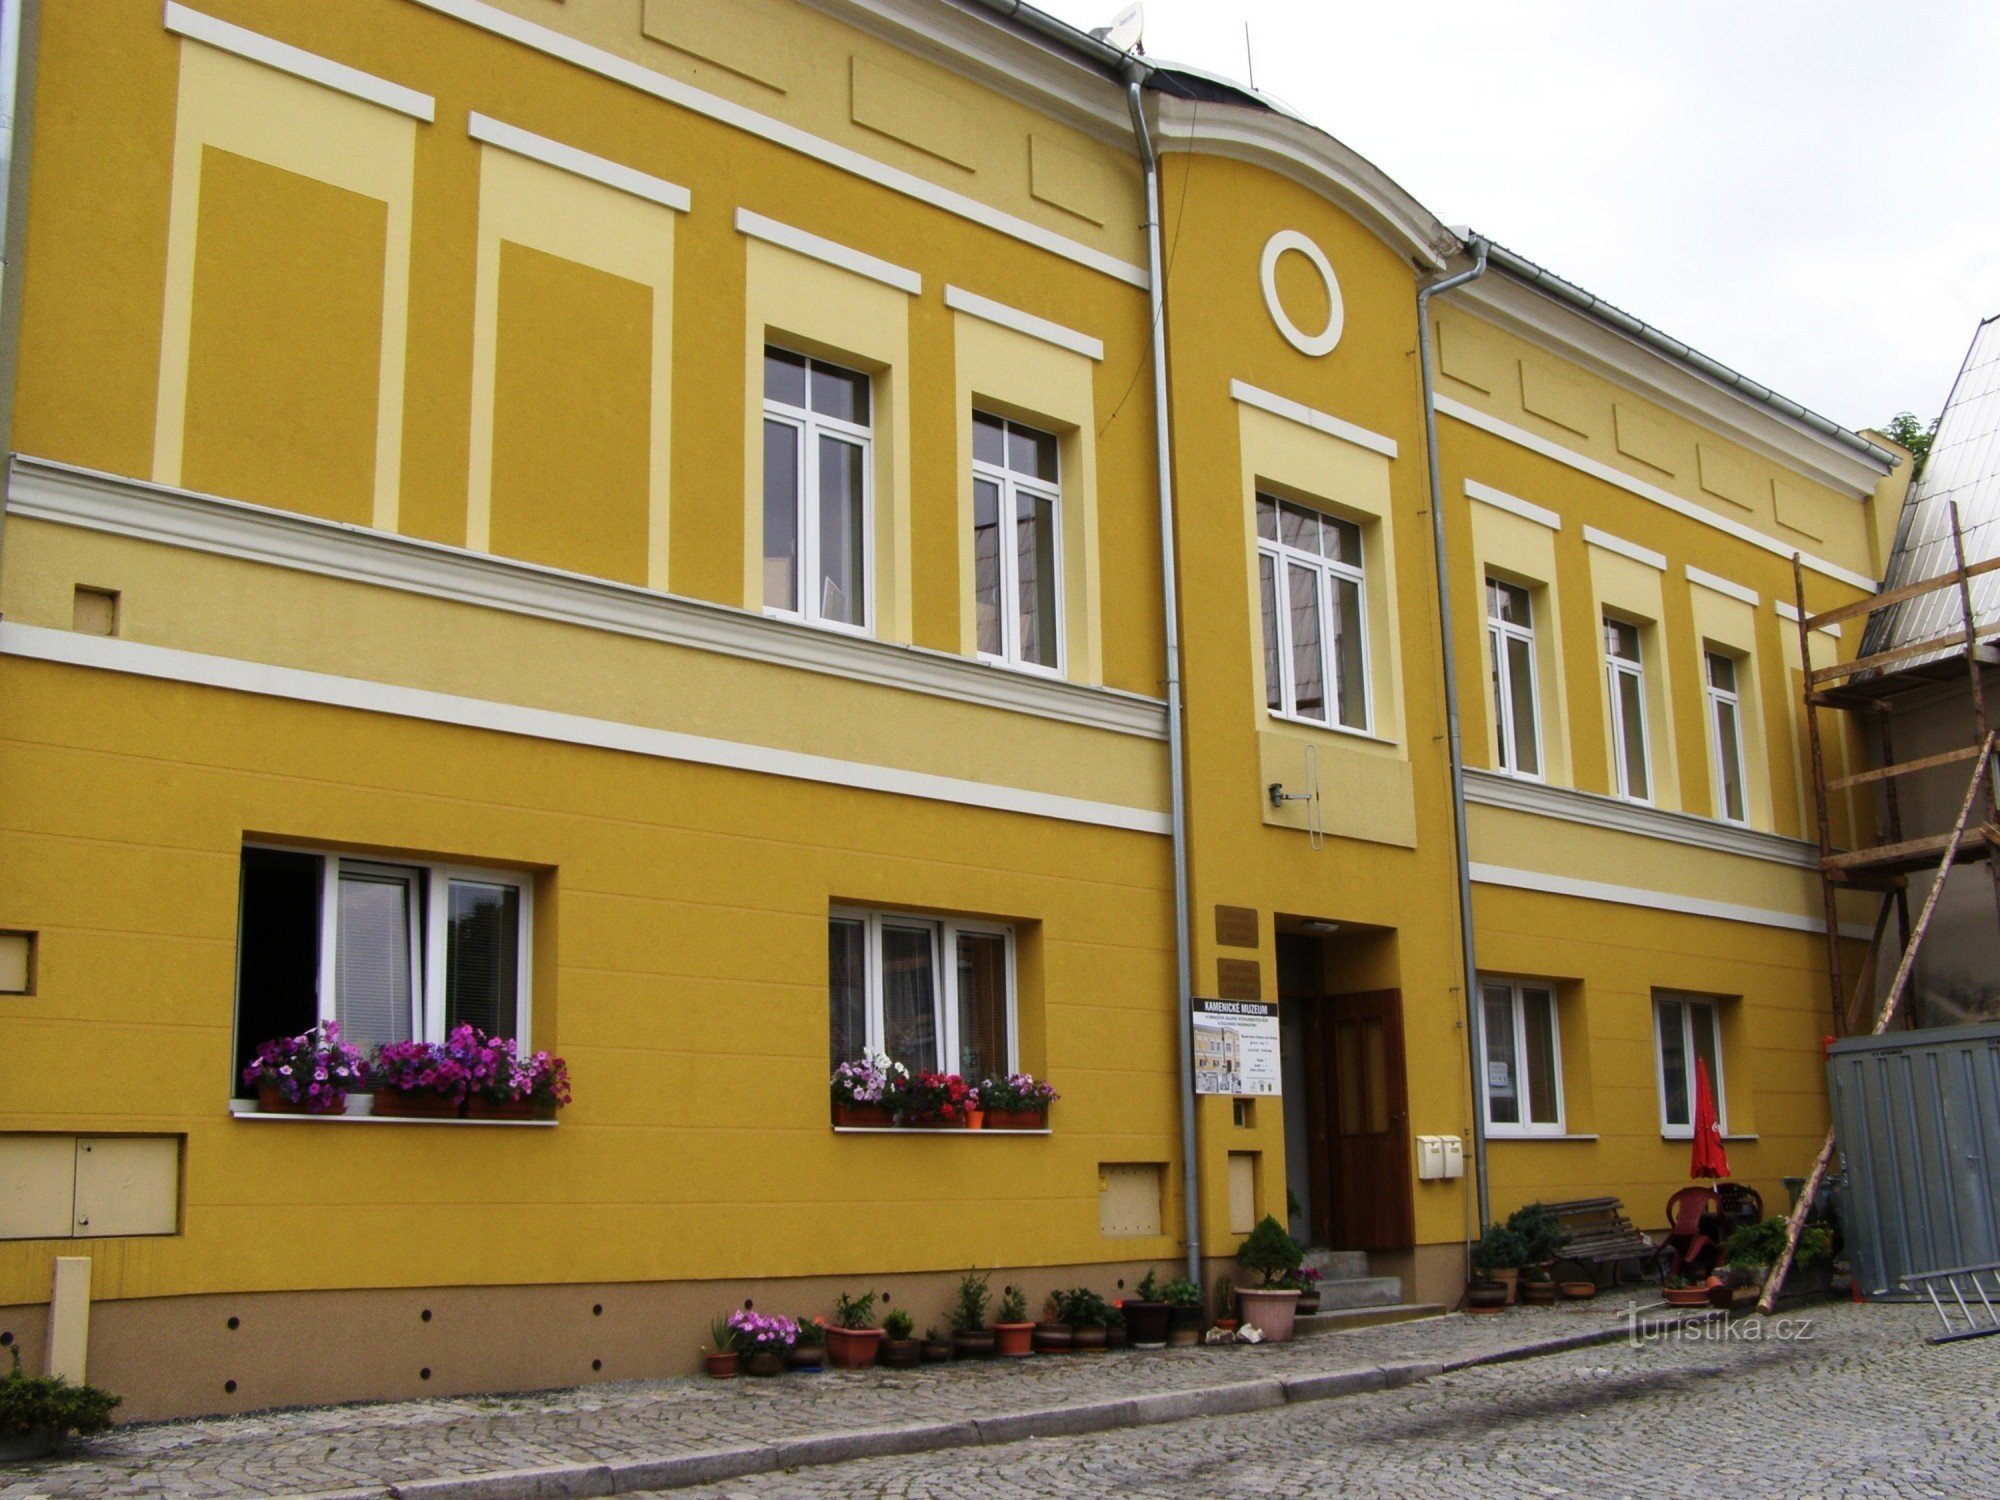 Žulová - Kamenické muzeum, Centrum Informacji Turystycznej, biblioteka